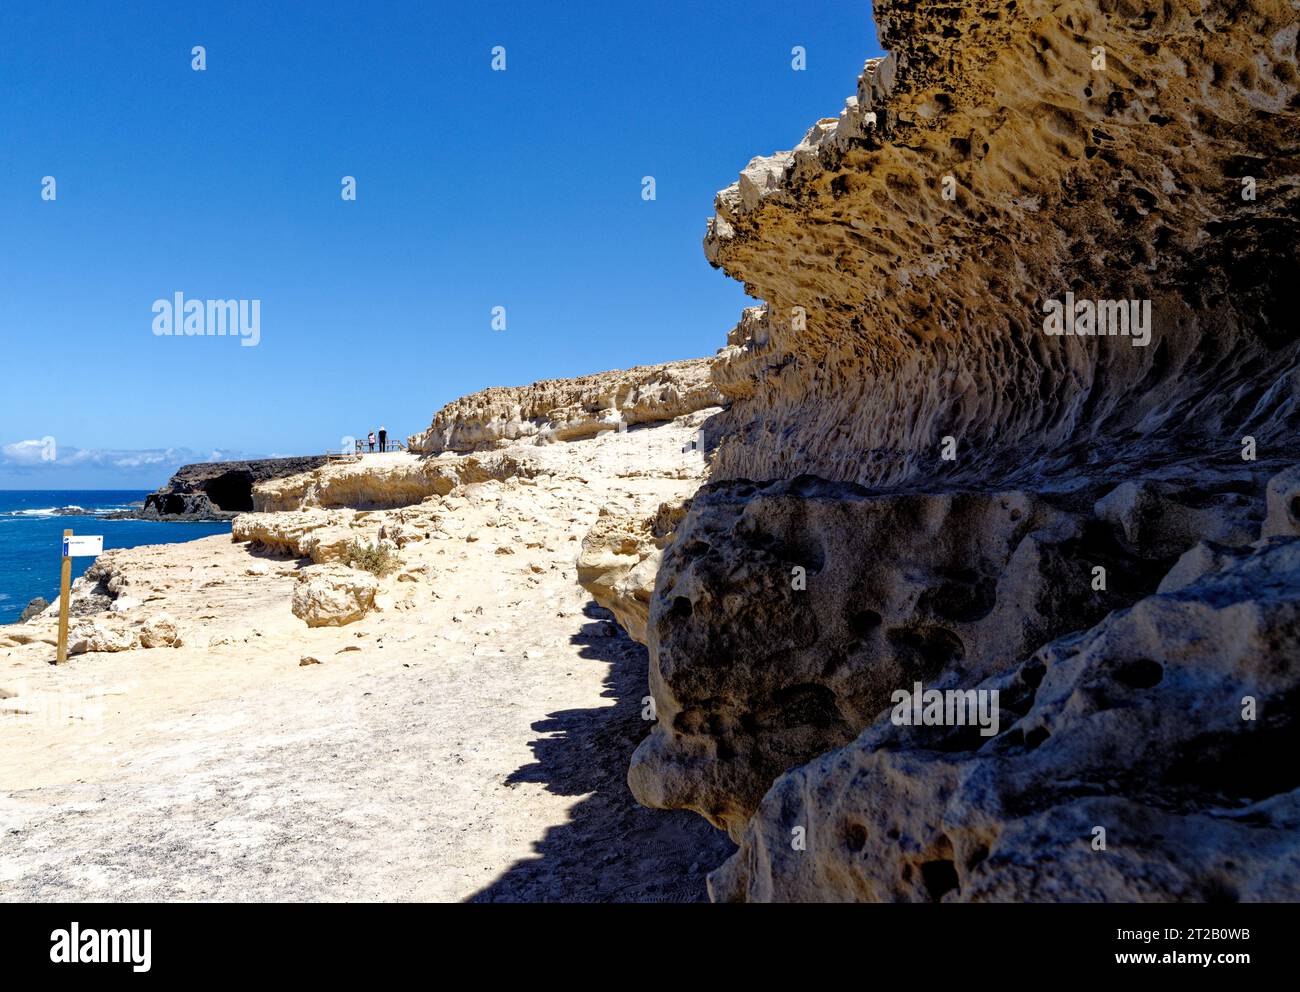 Grottes près du village balnéaire d'Ajuy sur la côte ouest de l'île canarienne de Fuerteventura - Ajuy, Pajara, Fuerteventura, Îles Canaries, Espagne - Banque D'Images